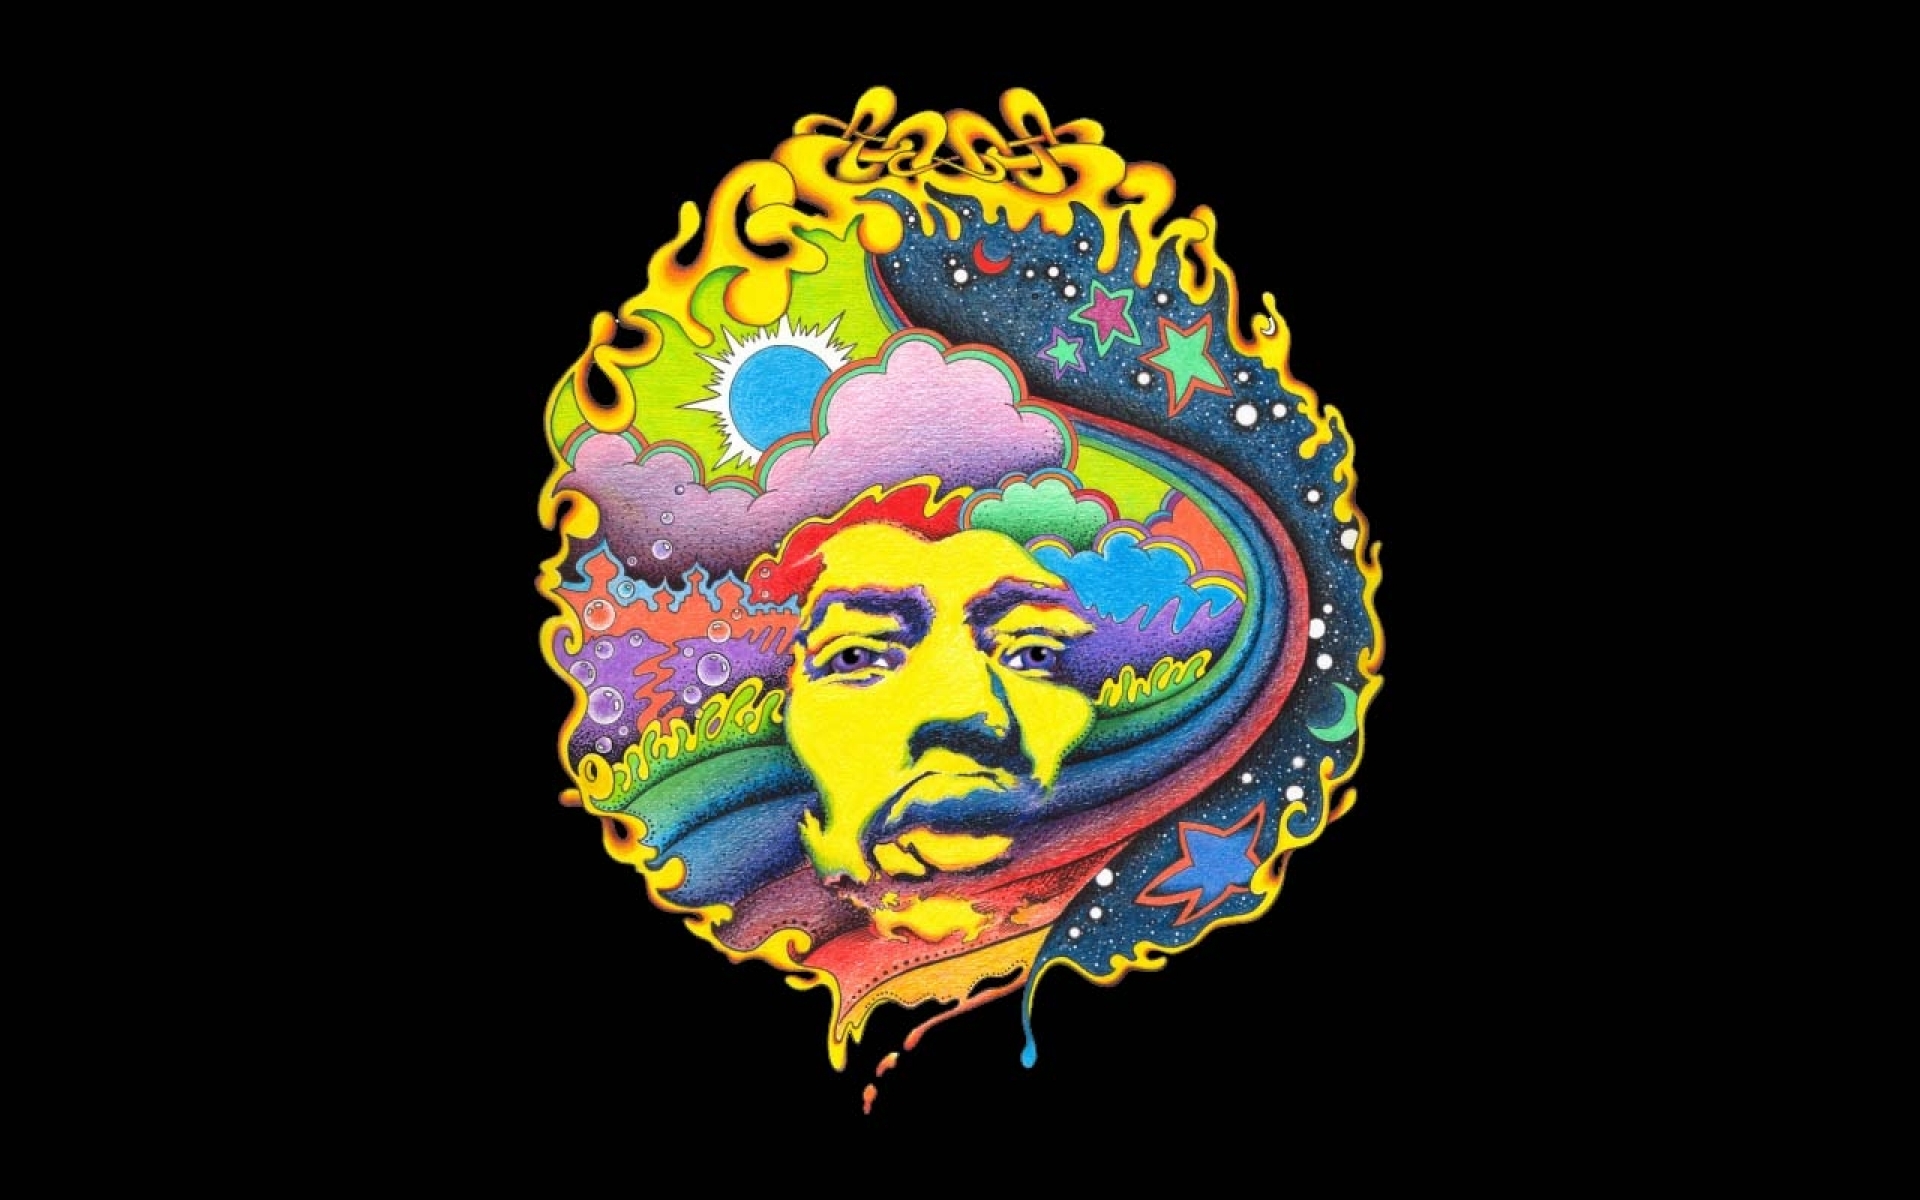 Jimi Hendrix Wallpaper 7s7m37e 4usky